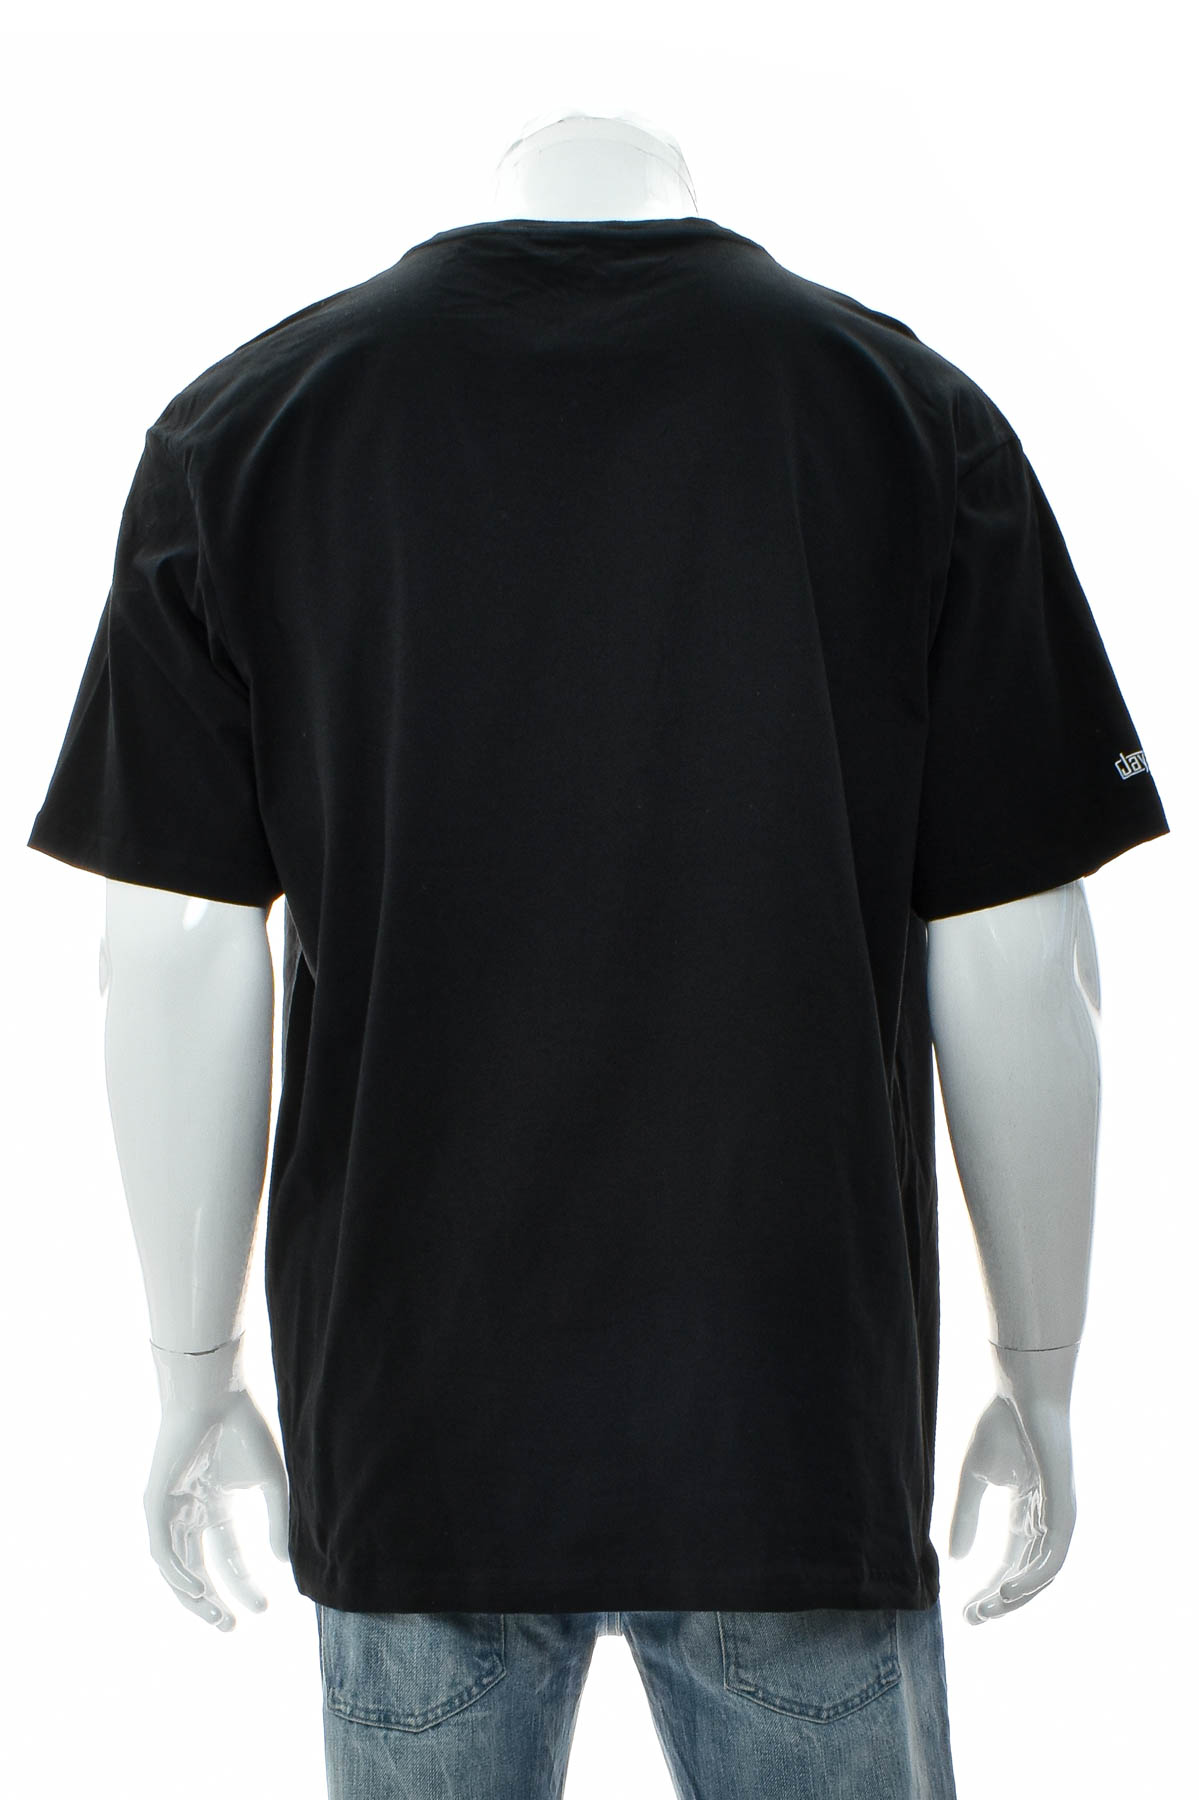 Ανδρικό μπλουζάκι - SONAR Clothing - 1